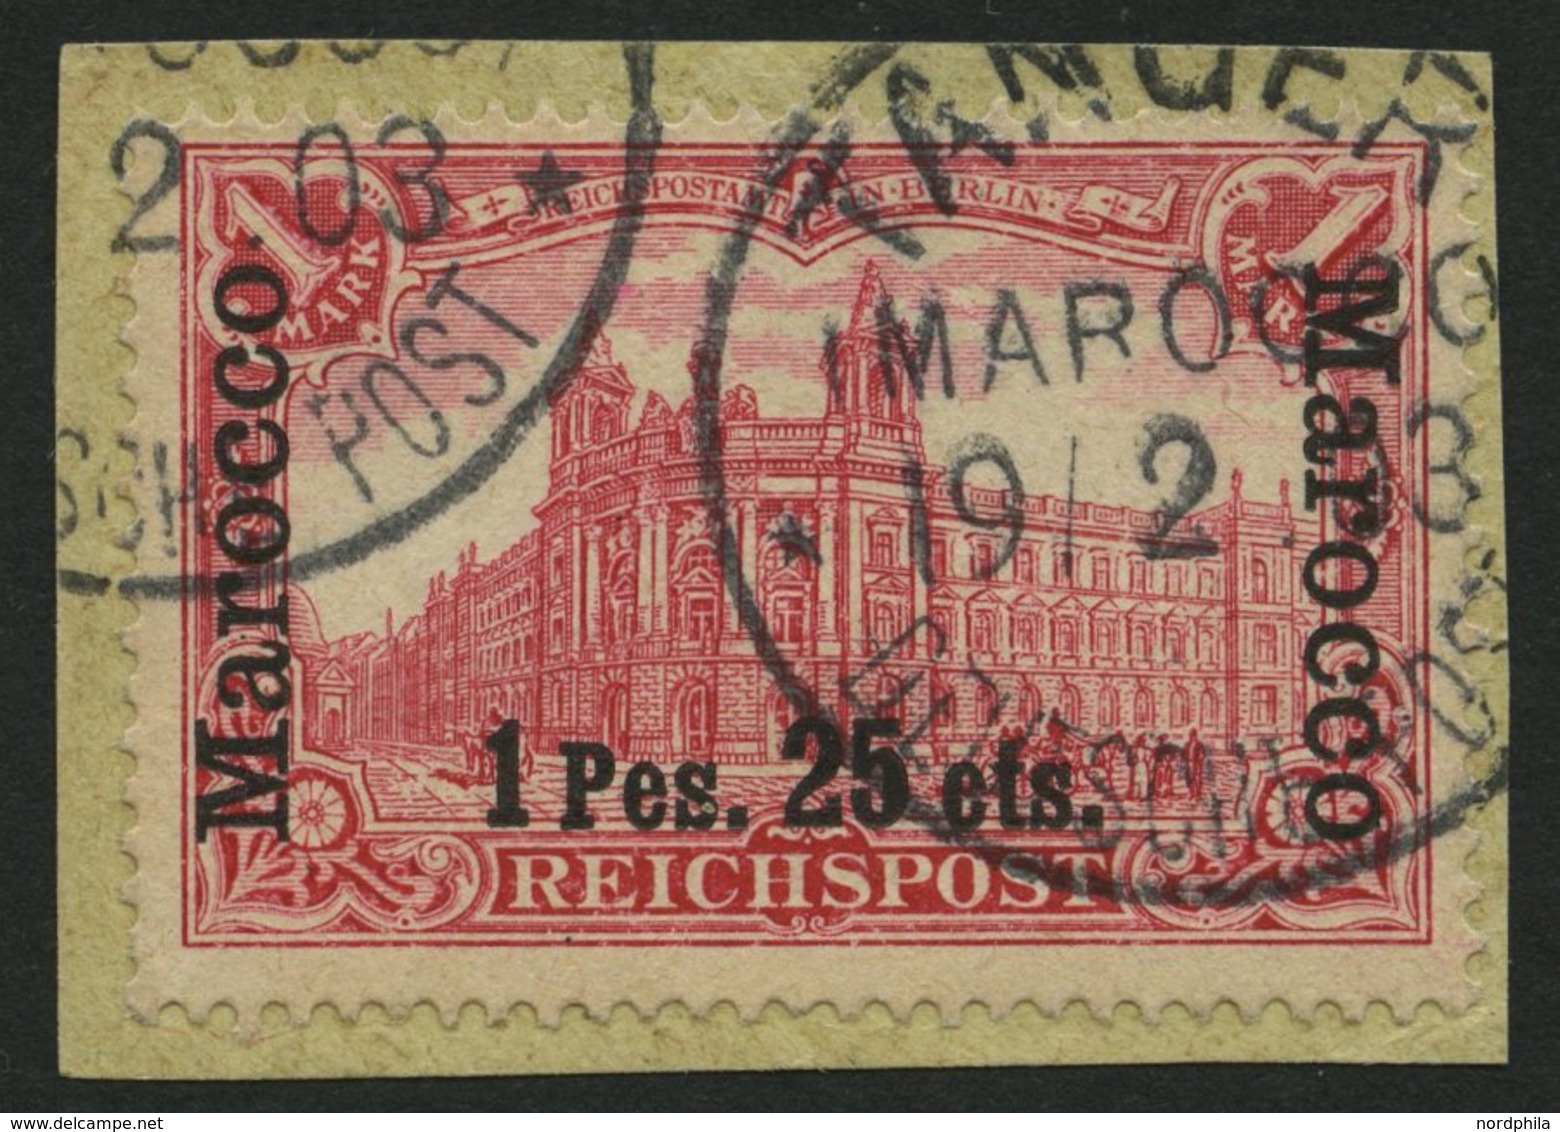 DP IN MAROKKO 16I BrfStk, 1900, 1 P. 25 C. Auf 1 M., Type I, Prachtbriefstück, Gepr. Mansfeld, Mi. 60.- - Marocco (uffici)